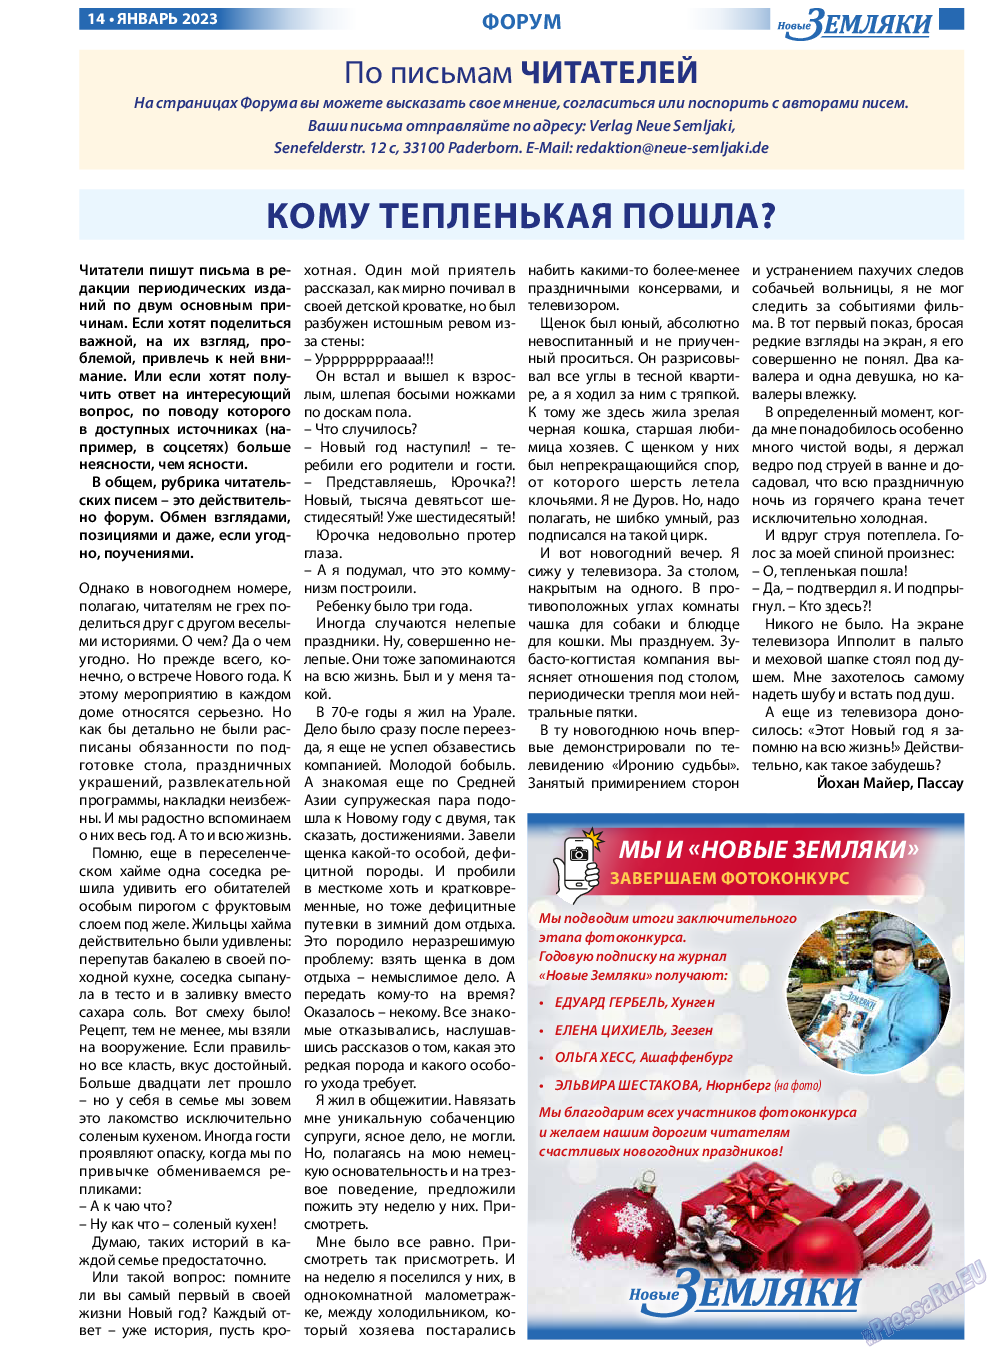 Новые Земляки, газета. 2023 №1 стр.14